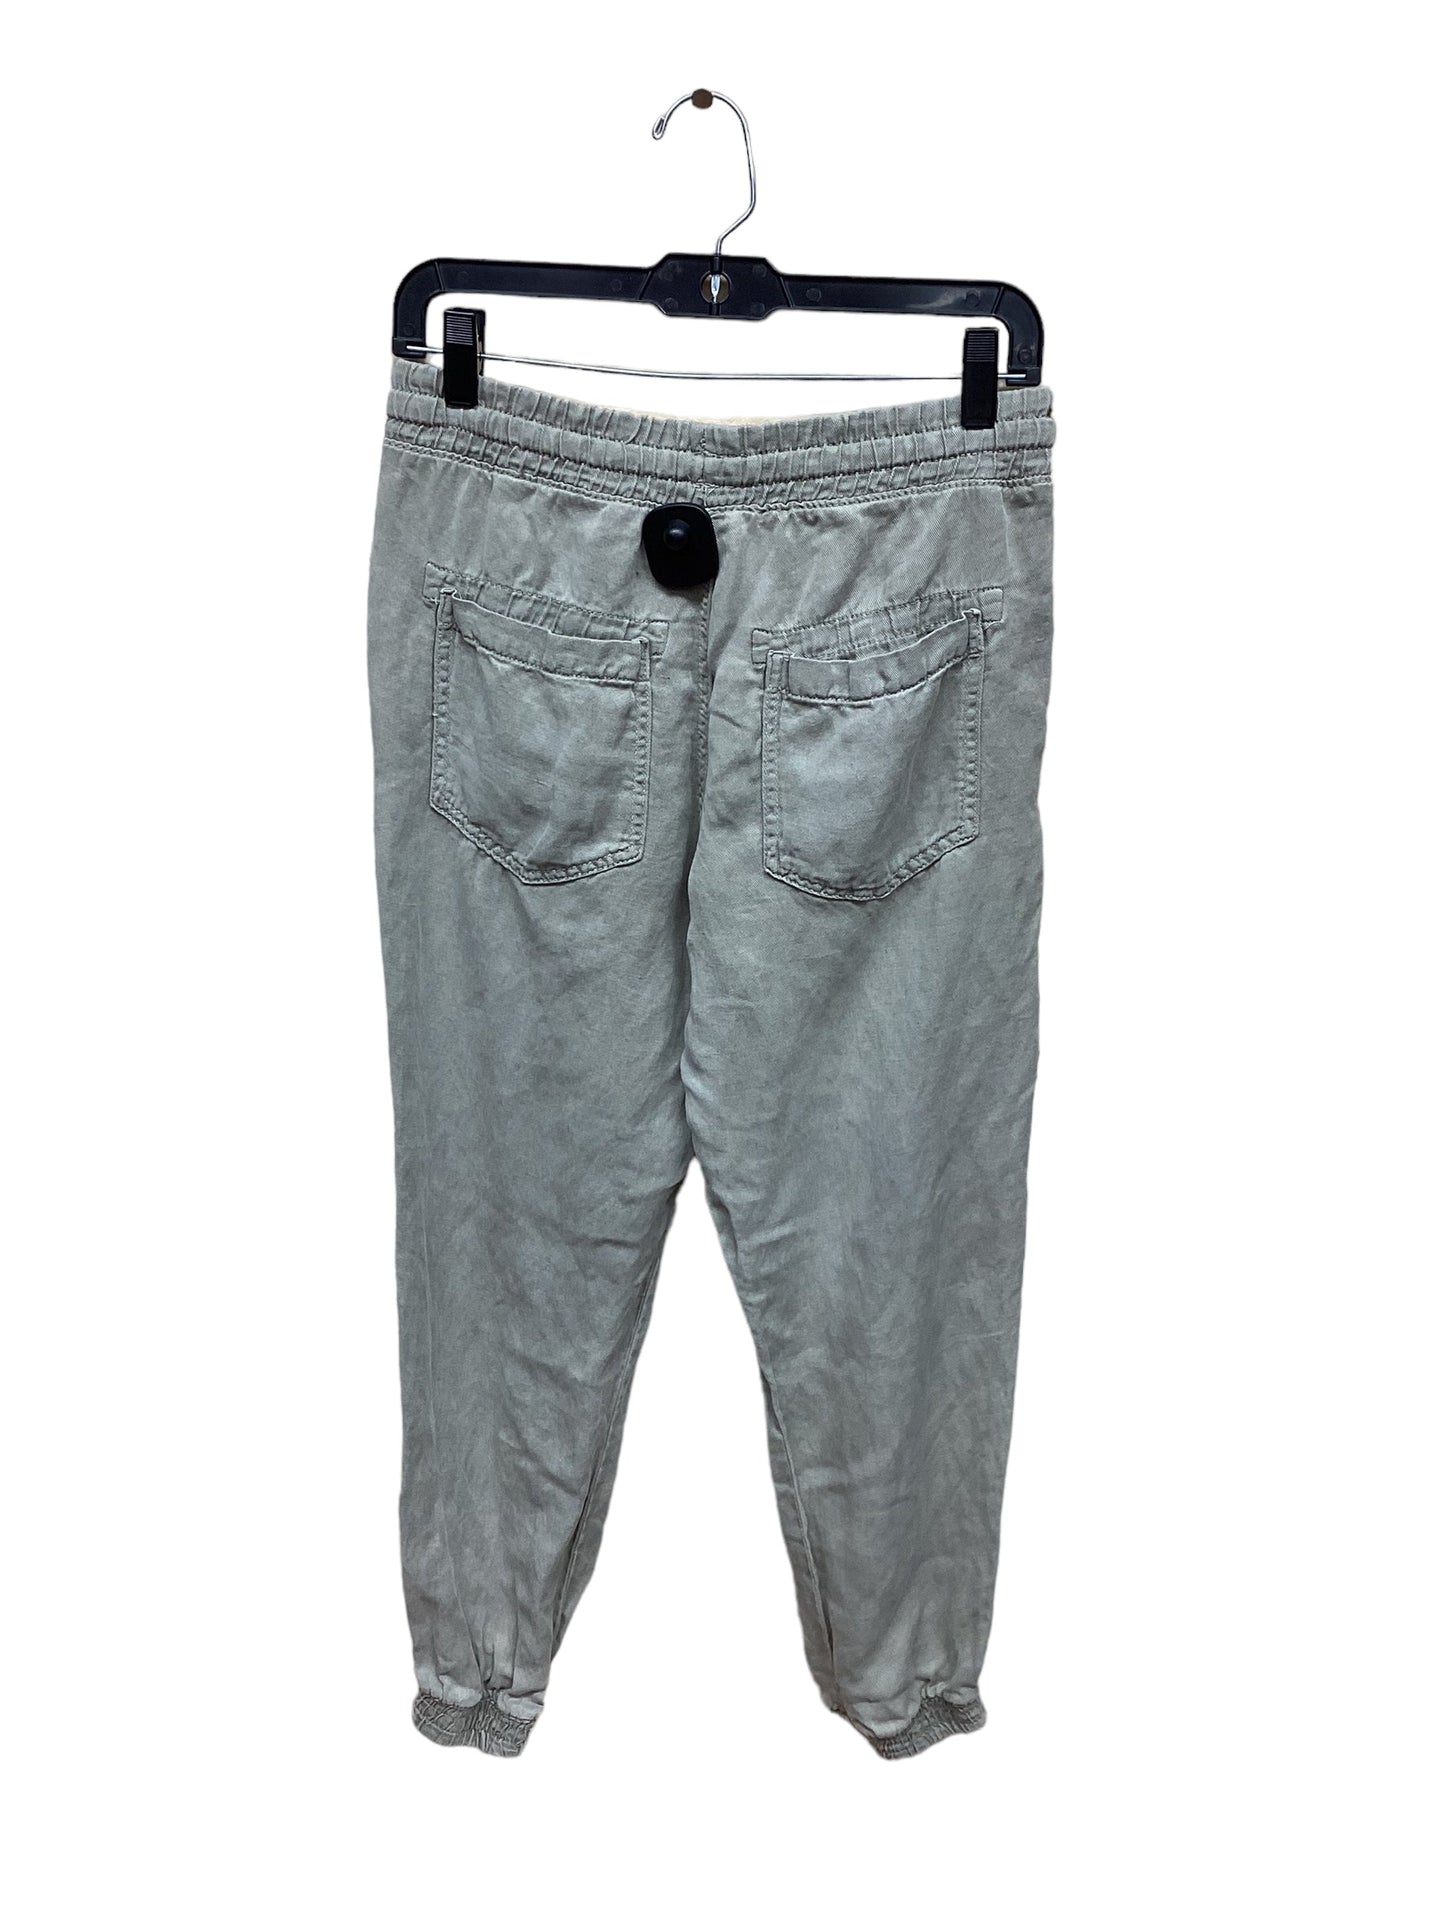 Pants Cargo & Utility By Zara  Size: S